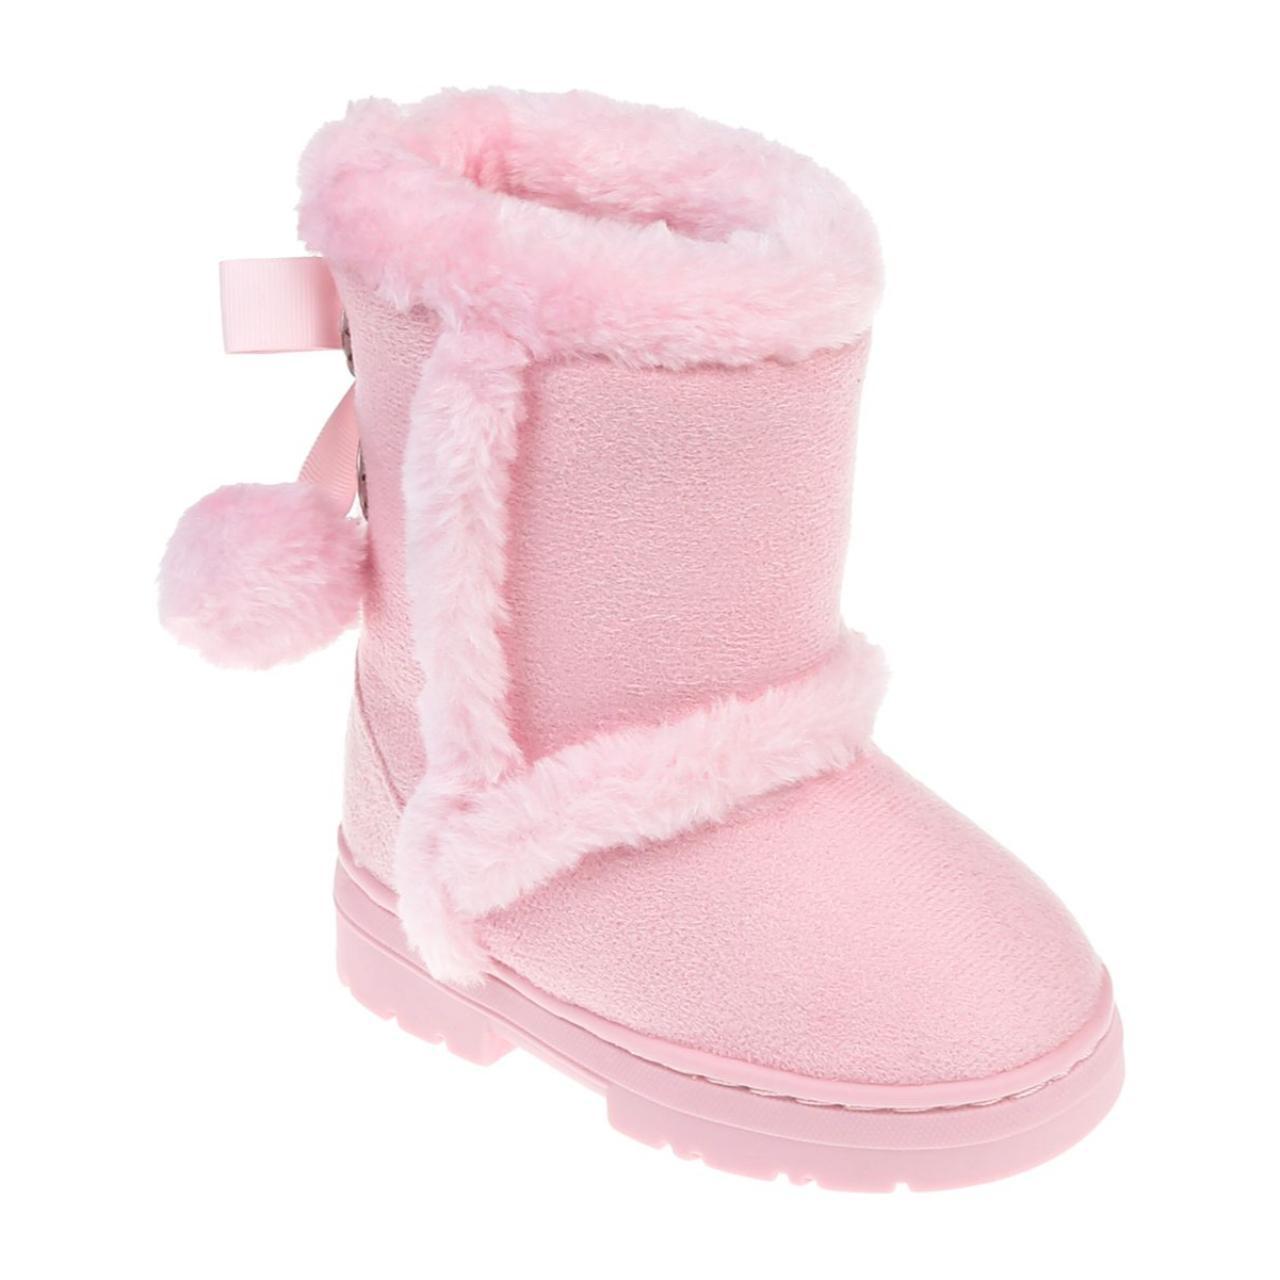 Bebe Pink Boots | Depop